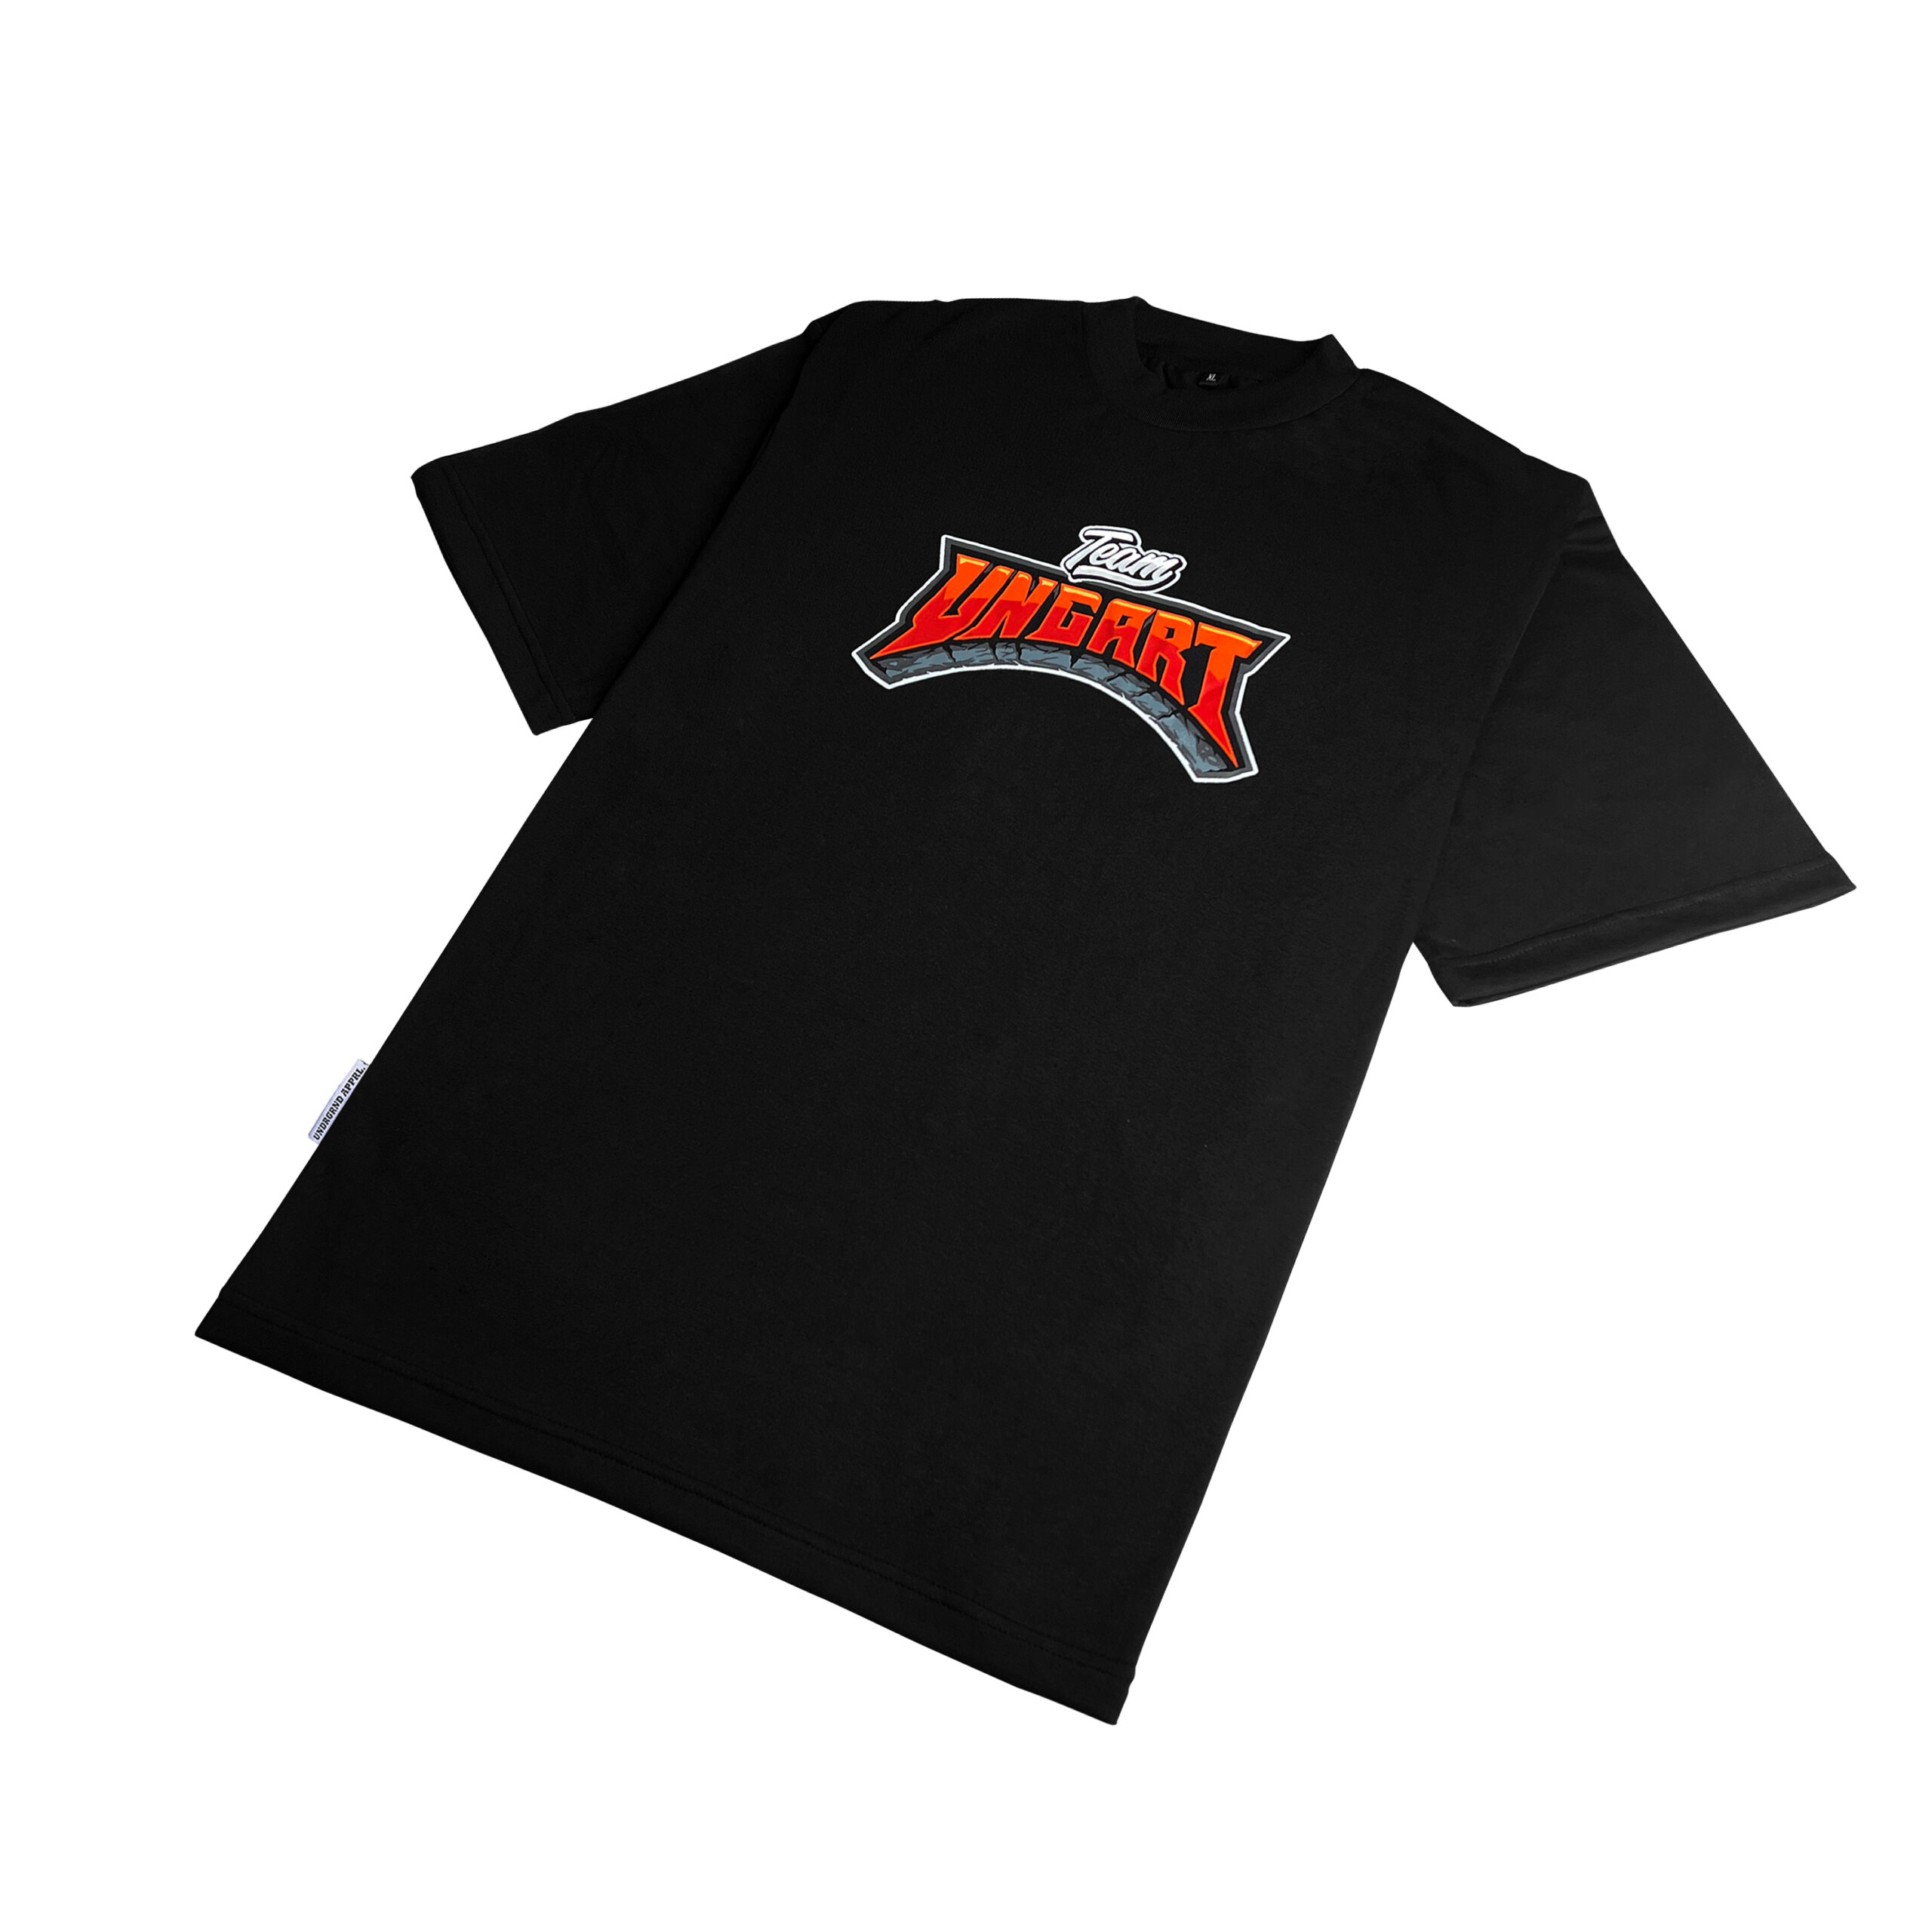 Team Ungart Logo Shirt – Underground Apparel